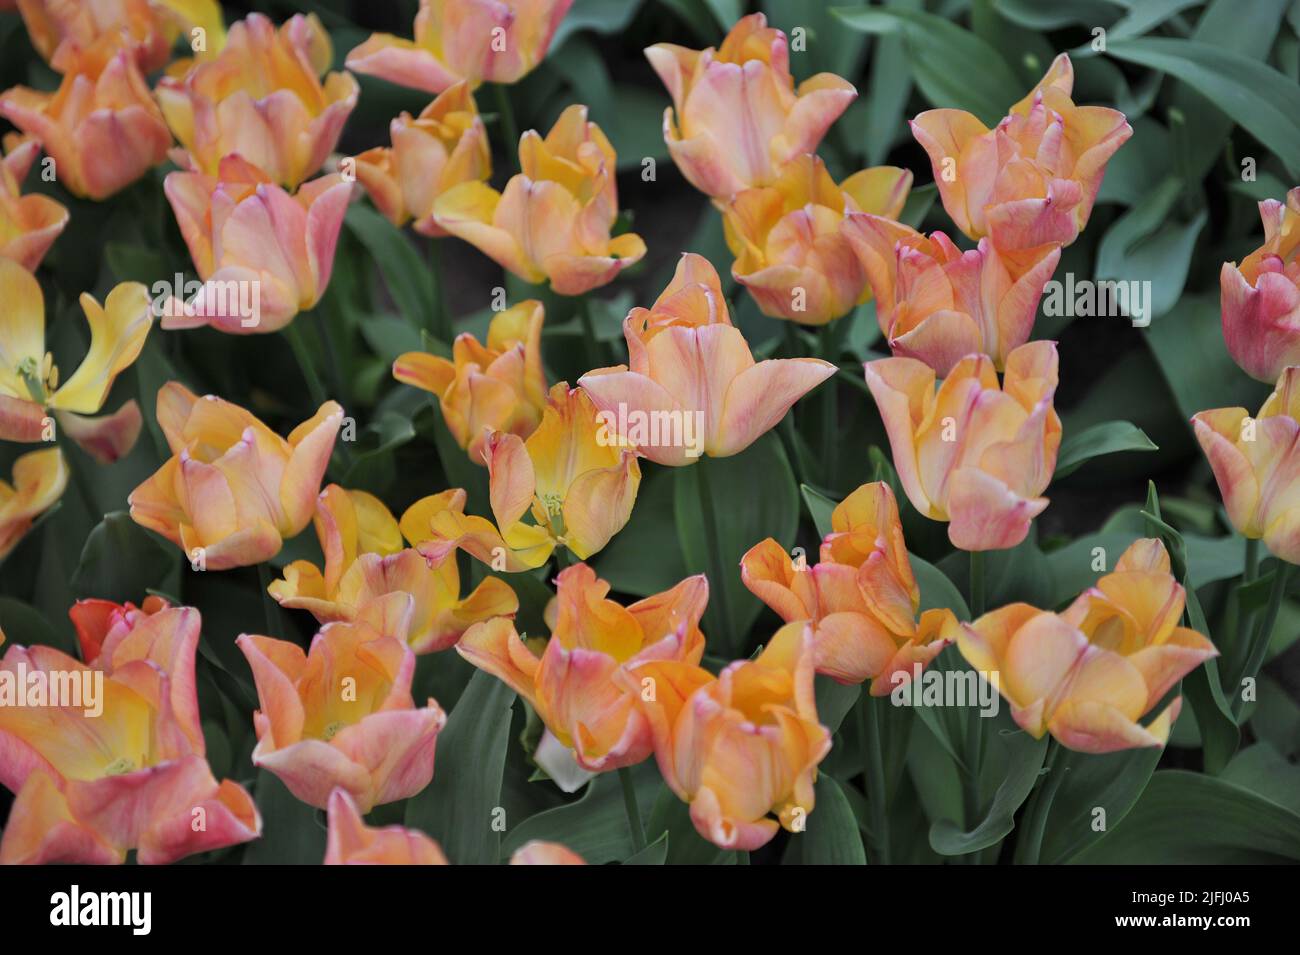 Tulipani Triumph rosa-arancio (Tulipa) Passio Dolce fioritura in un giardino nel mese di aprile Foto Stock